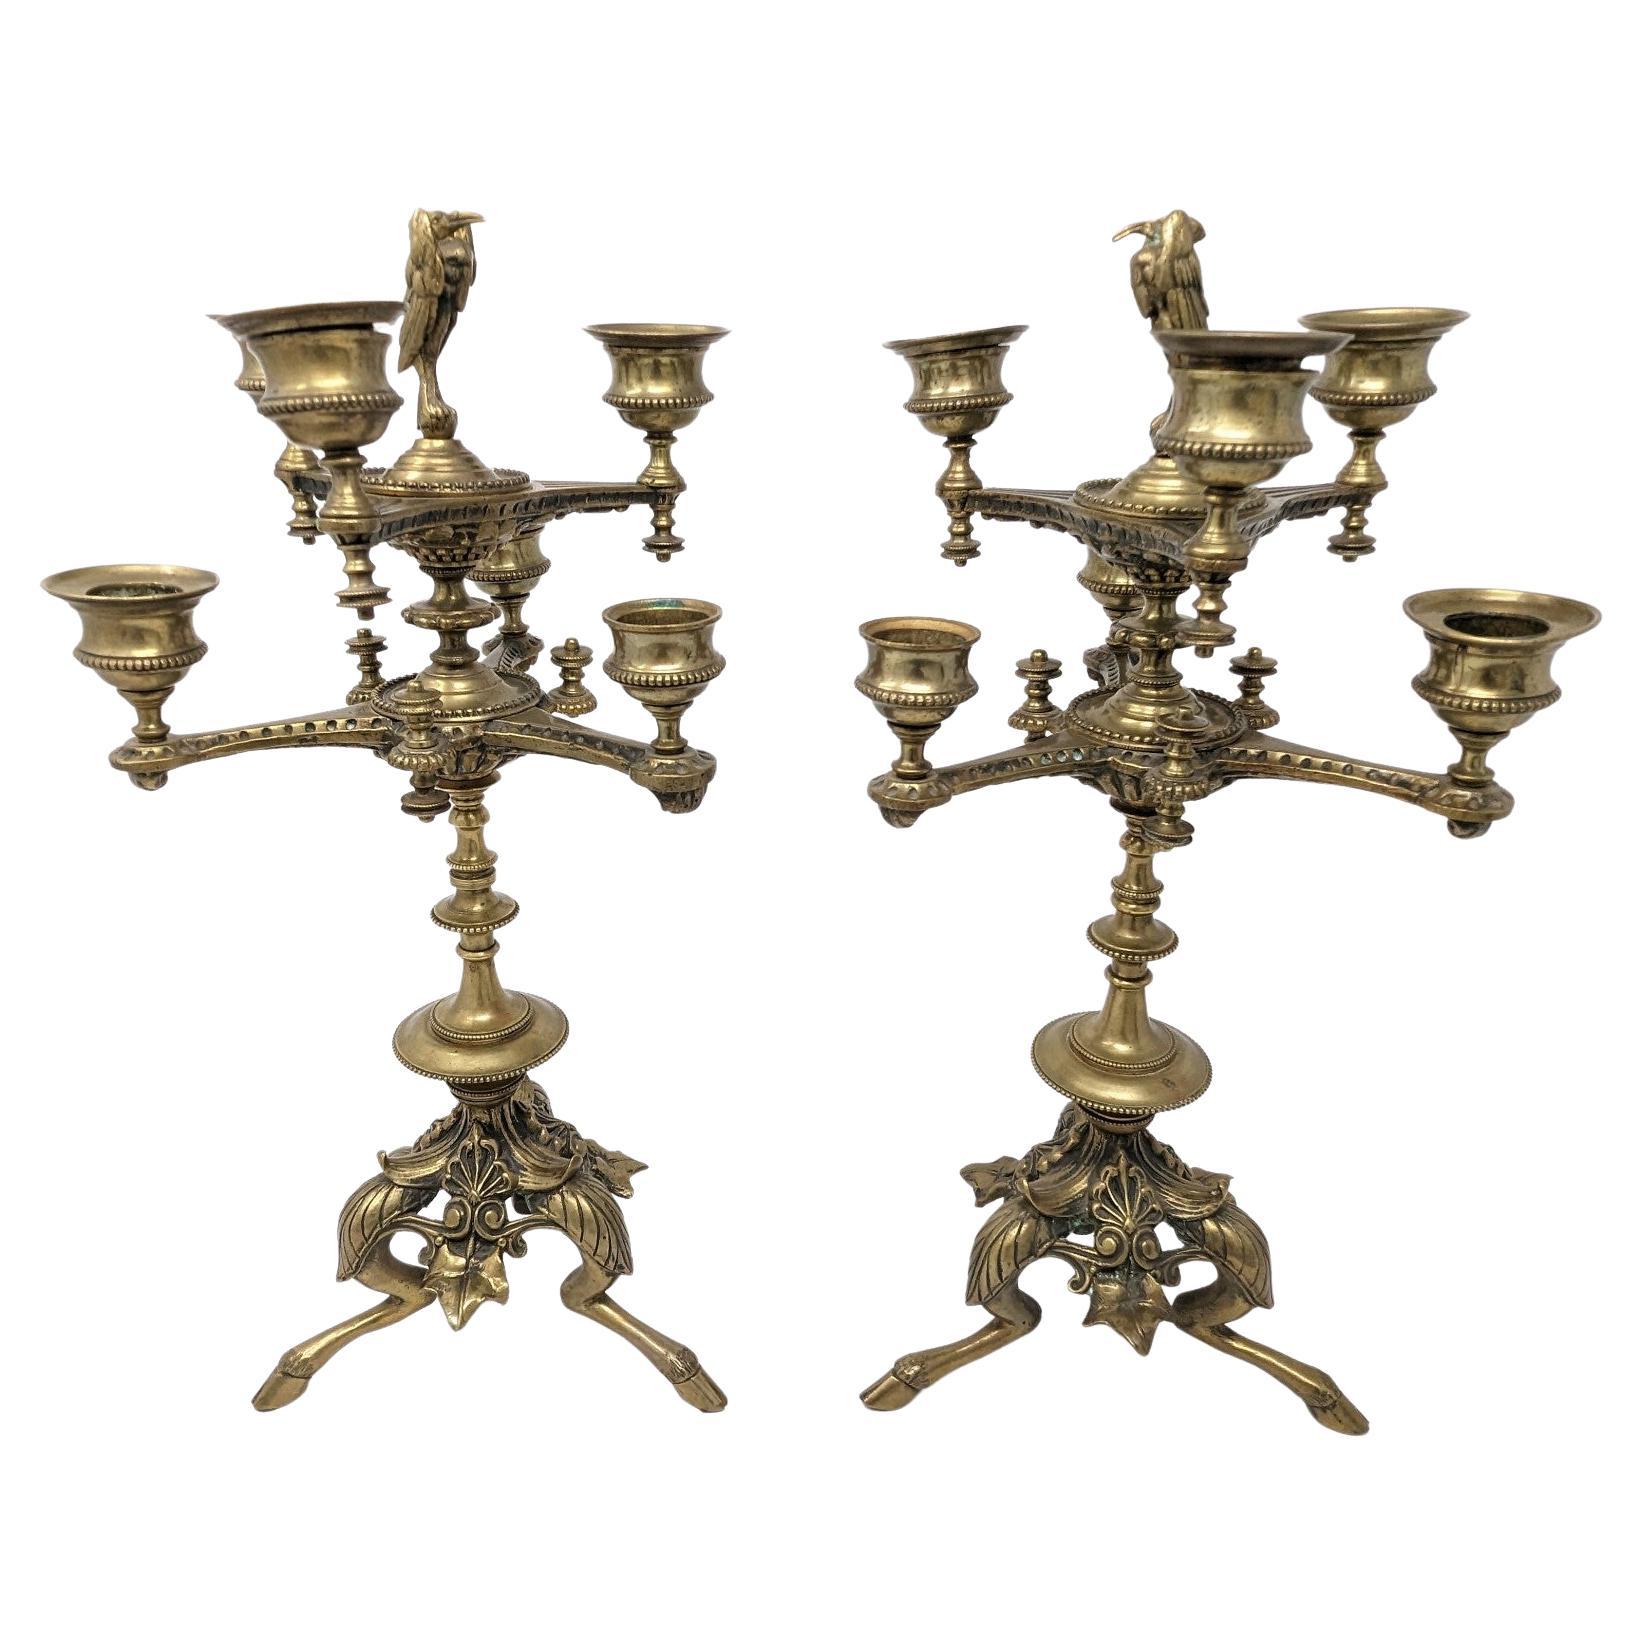 Paar antike Kandelaber, europäische Kerzenständer aus Messing des 19. Jahrhunderts mit Fuß